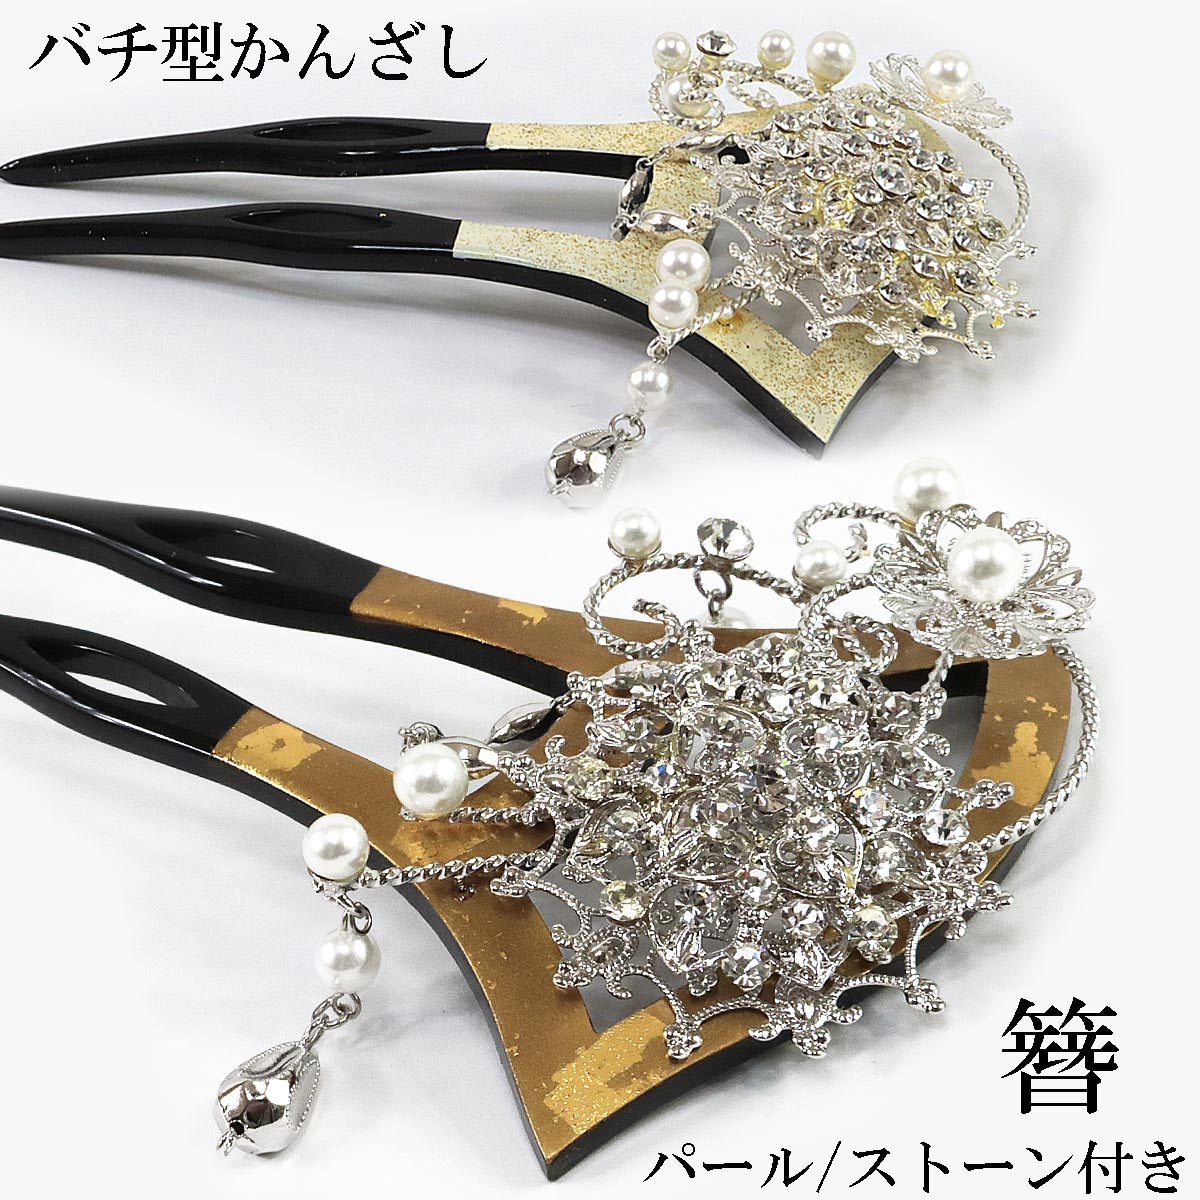 バチ型かんざし -107- フェイクダイヤ/パール付き 二本差し 金/銀 白/銀 日本製